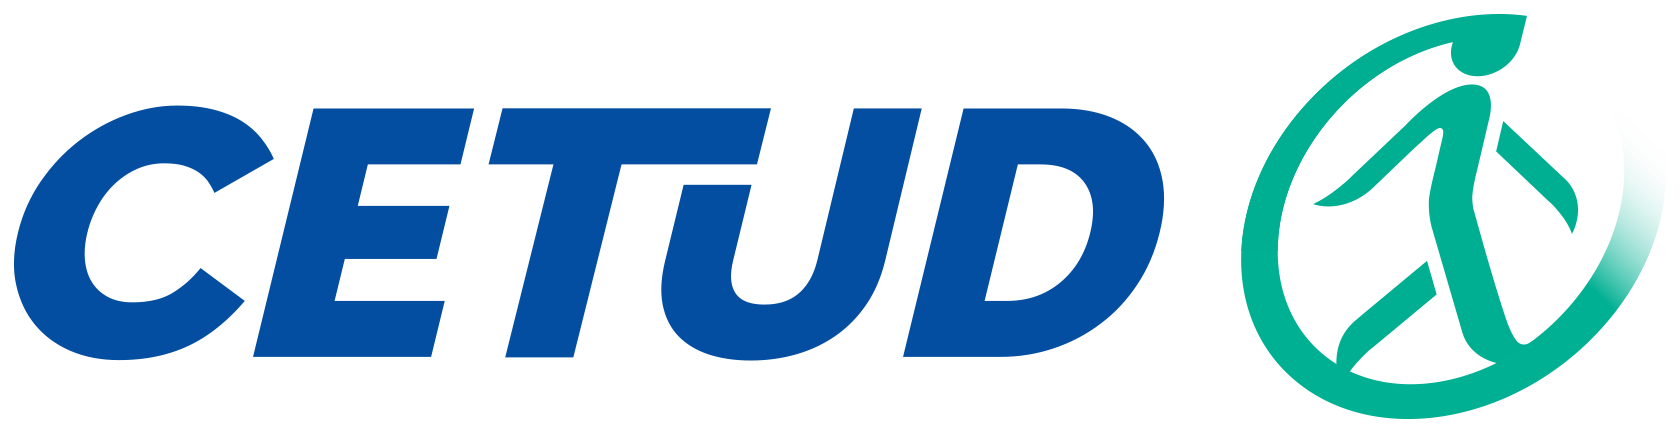 logo CETUD